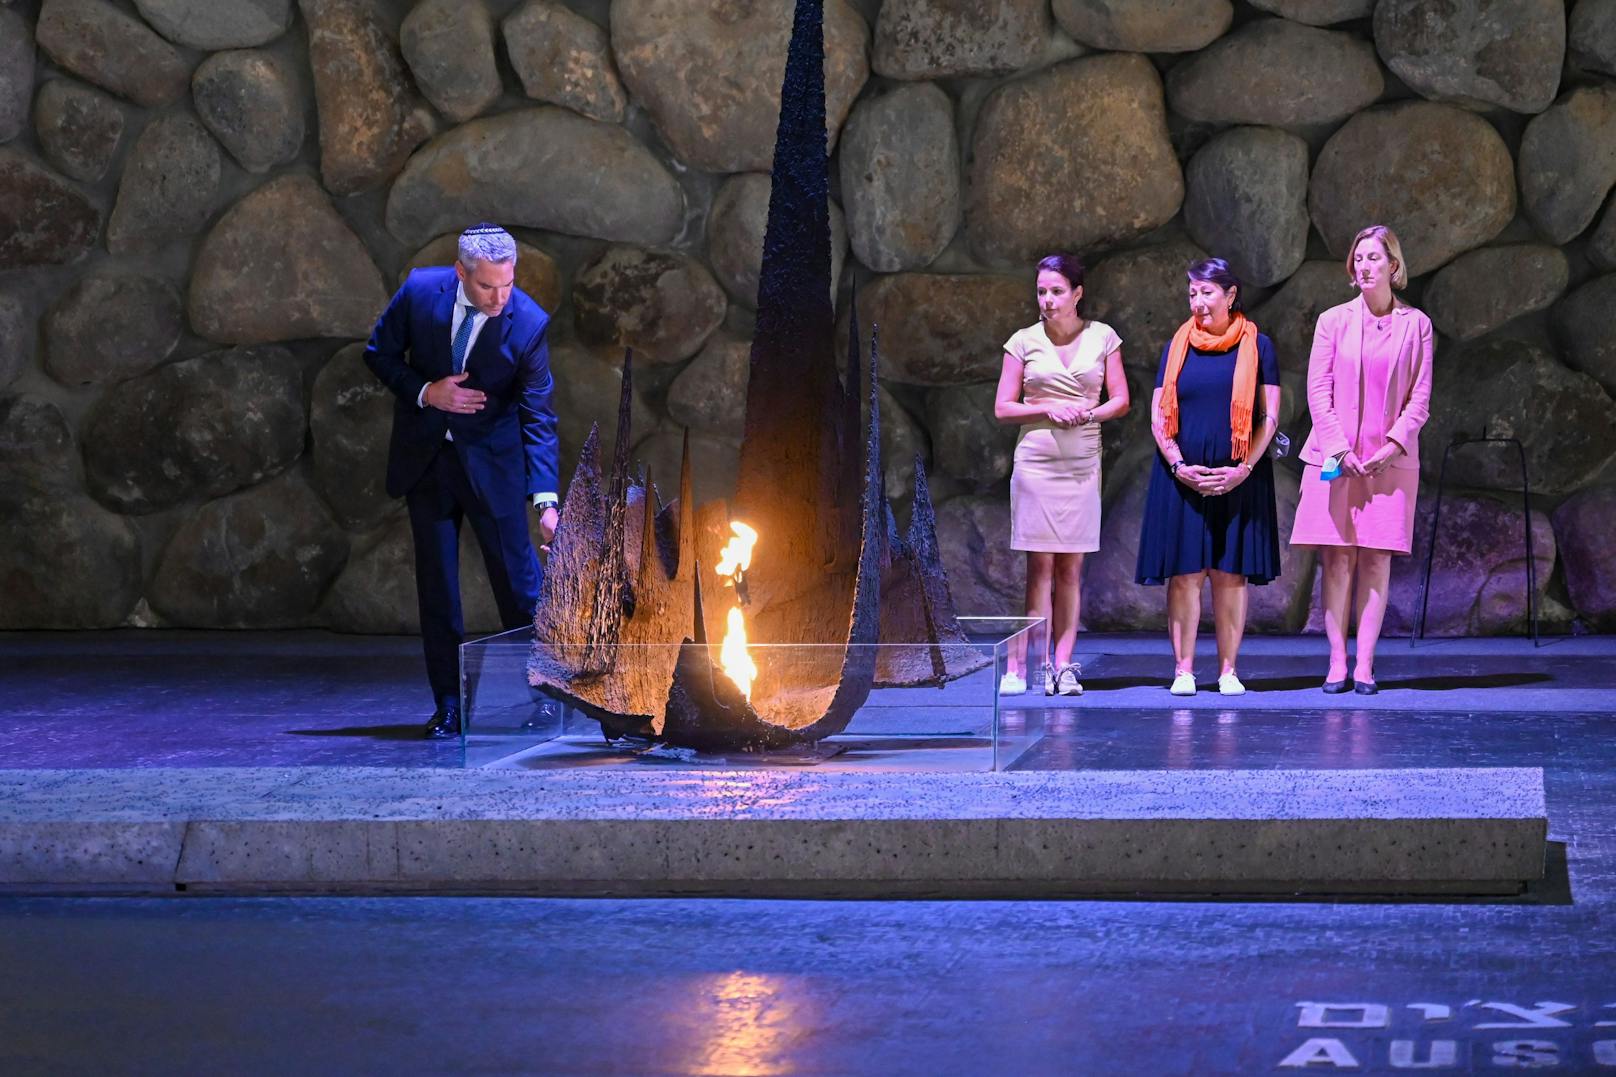 Die Gedenkstätte Yad Vashem hat eine besondere Bedeutung für mich, sie gibt den Opfern wieder ein Stück ihrer Identität zurück", sagte Nehammer.